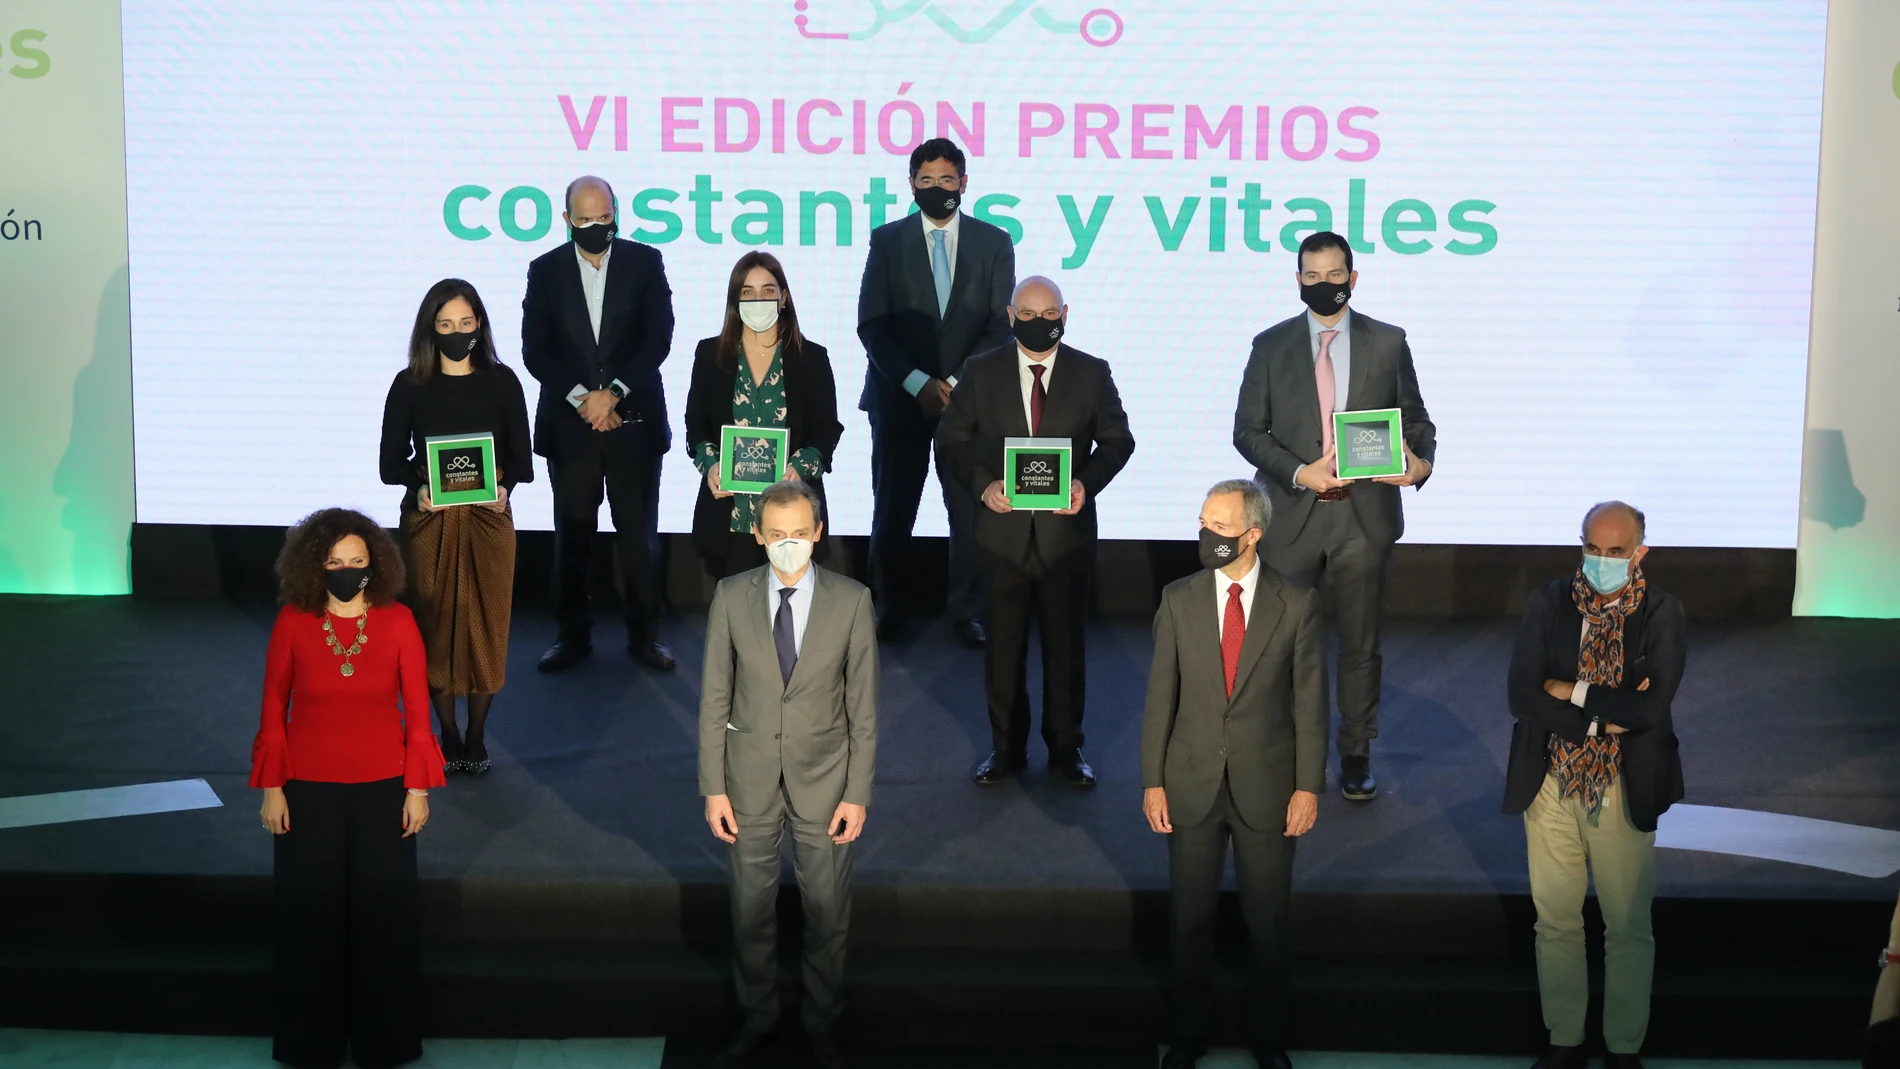 La entrega de los VI Premios Constantes y Vitales se celebró ayer en el Palacio de Neptuno de Madrid, en un acto presidido por el ministro Pedro Duque